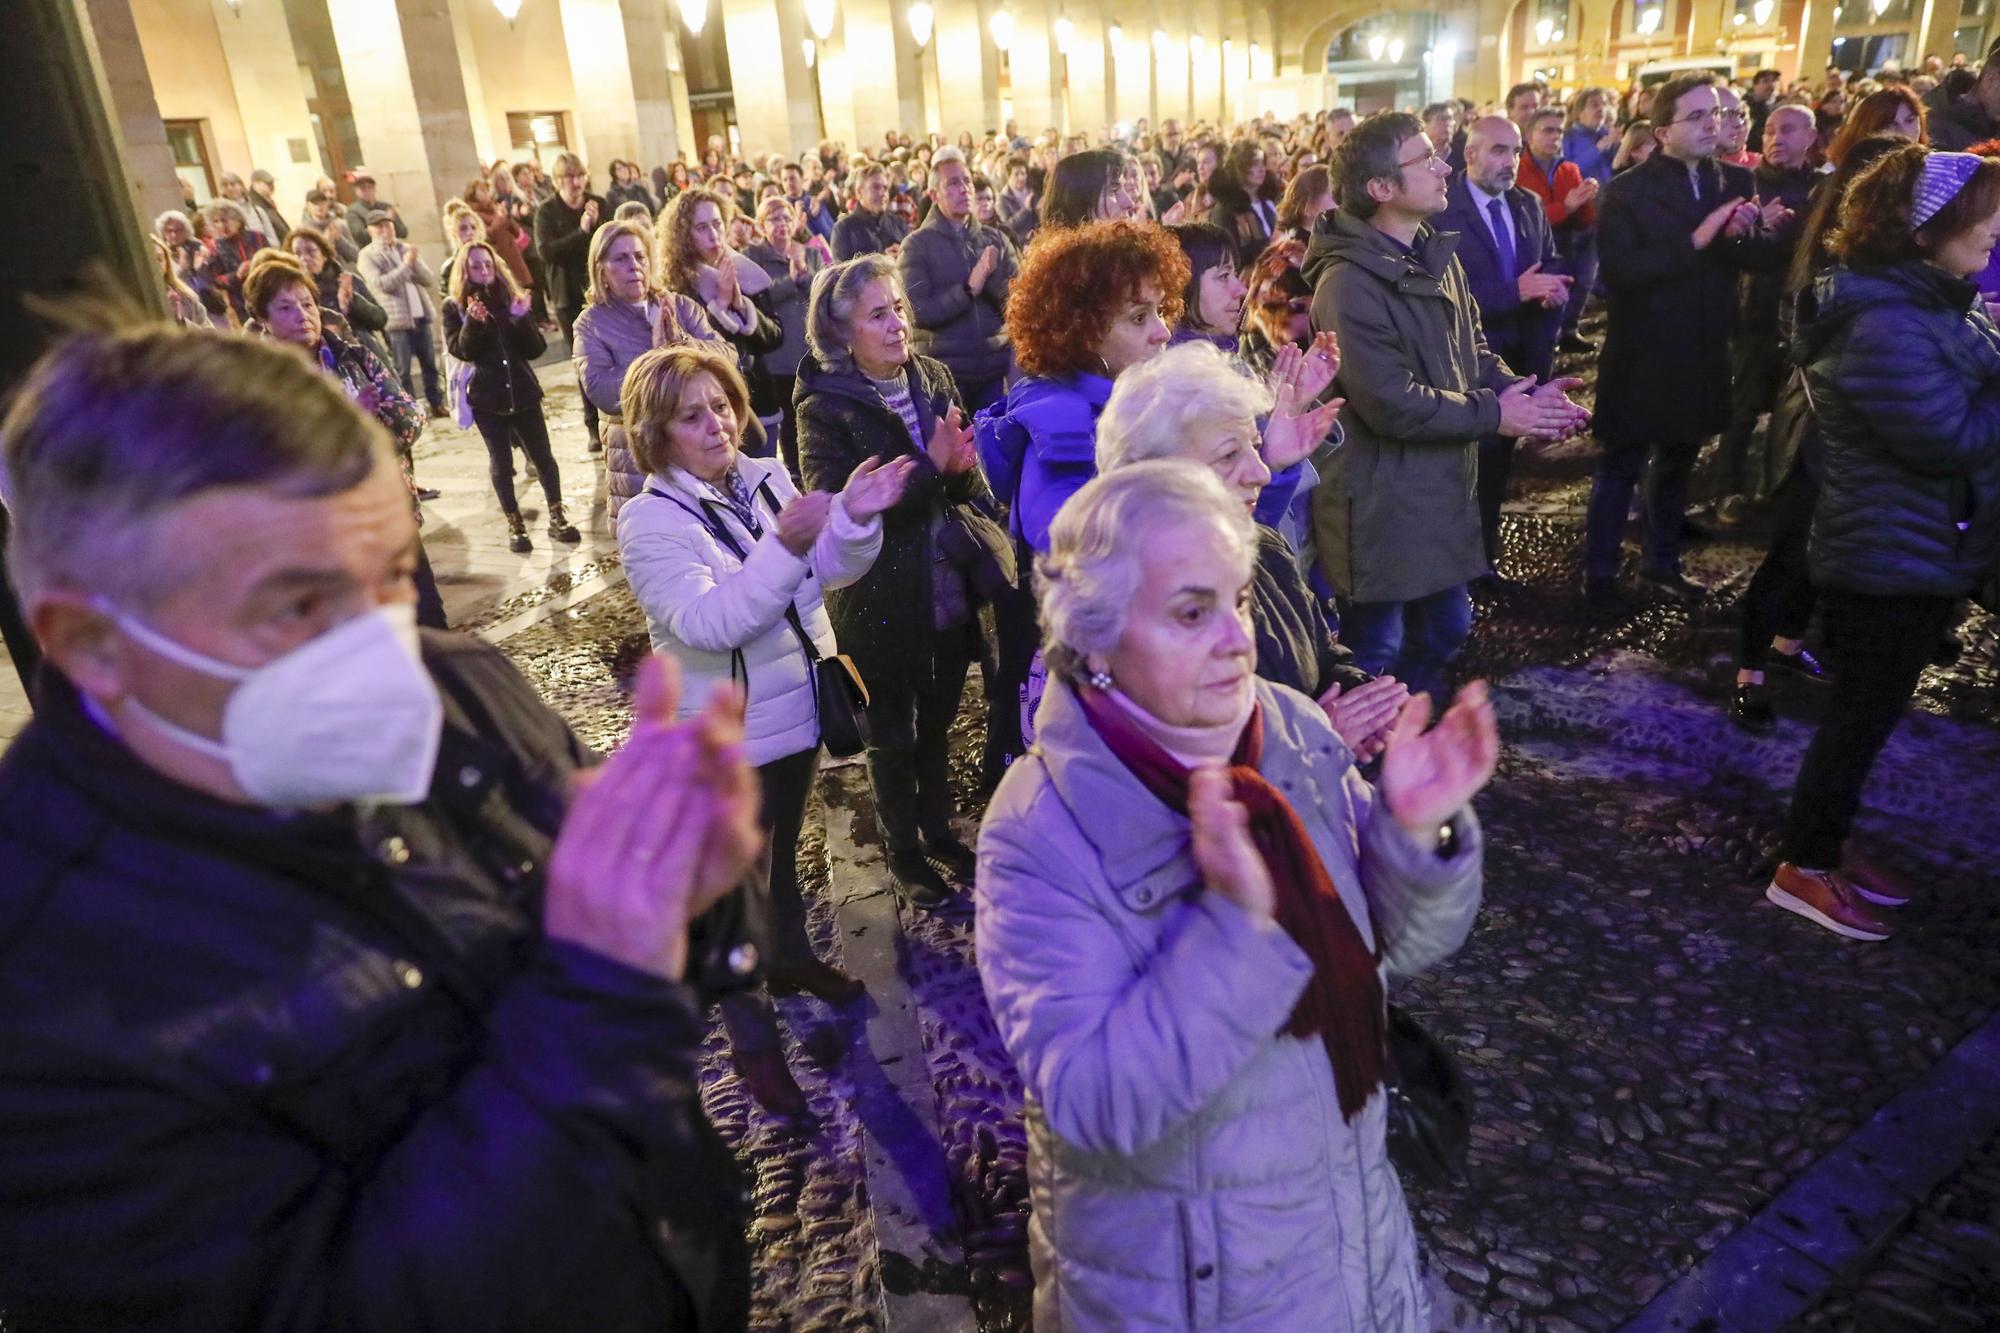 En imágenes: Gijón se cita en la plaza Mayor por el Día Internacional de la Eliminación de la Violencia contra las Mujeres